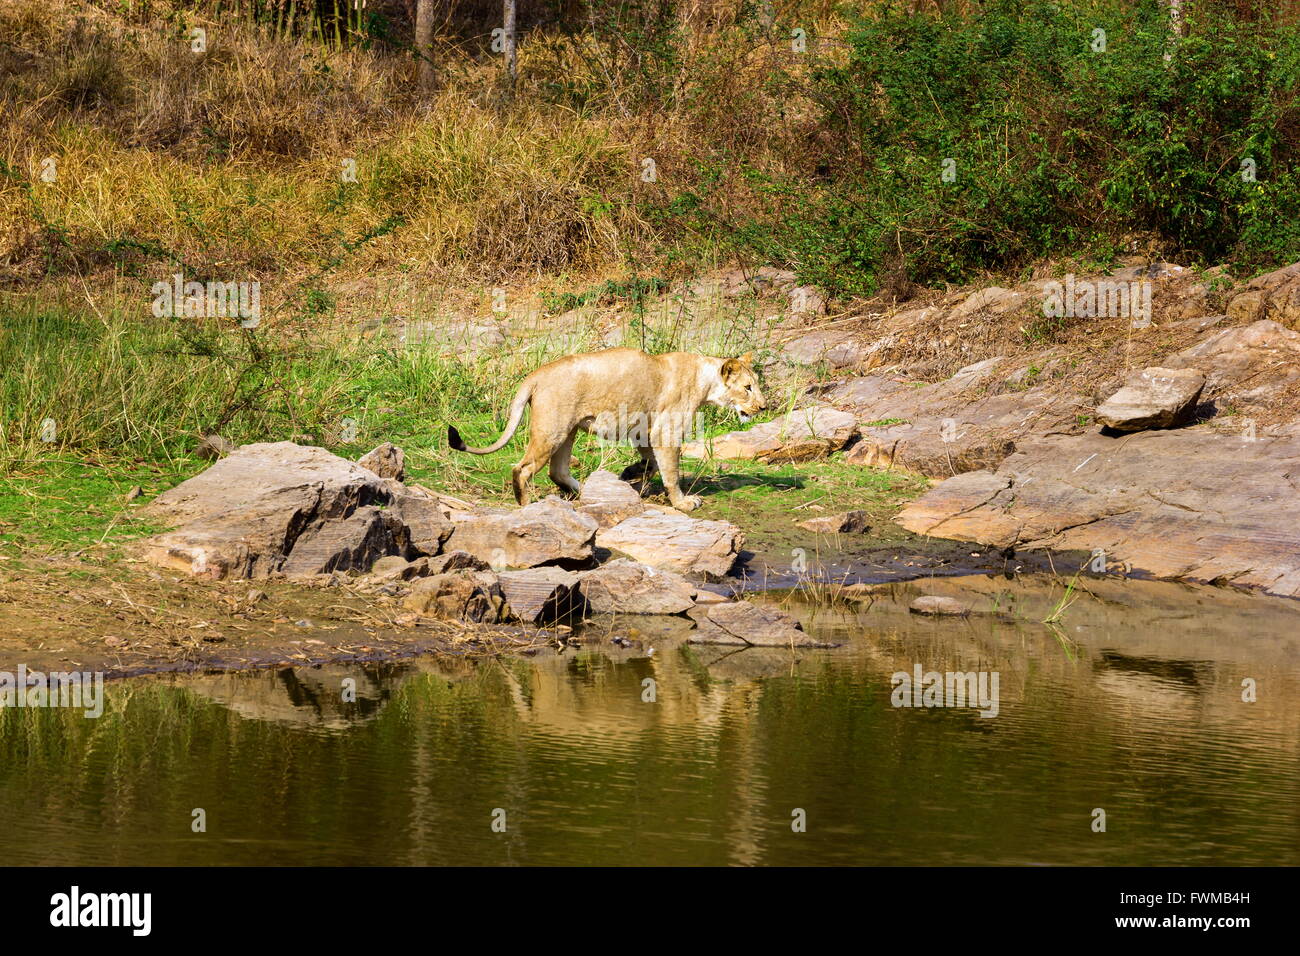 Incredible India asiatischen Löwen. Stockfoto